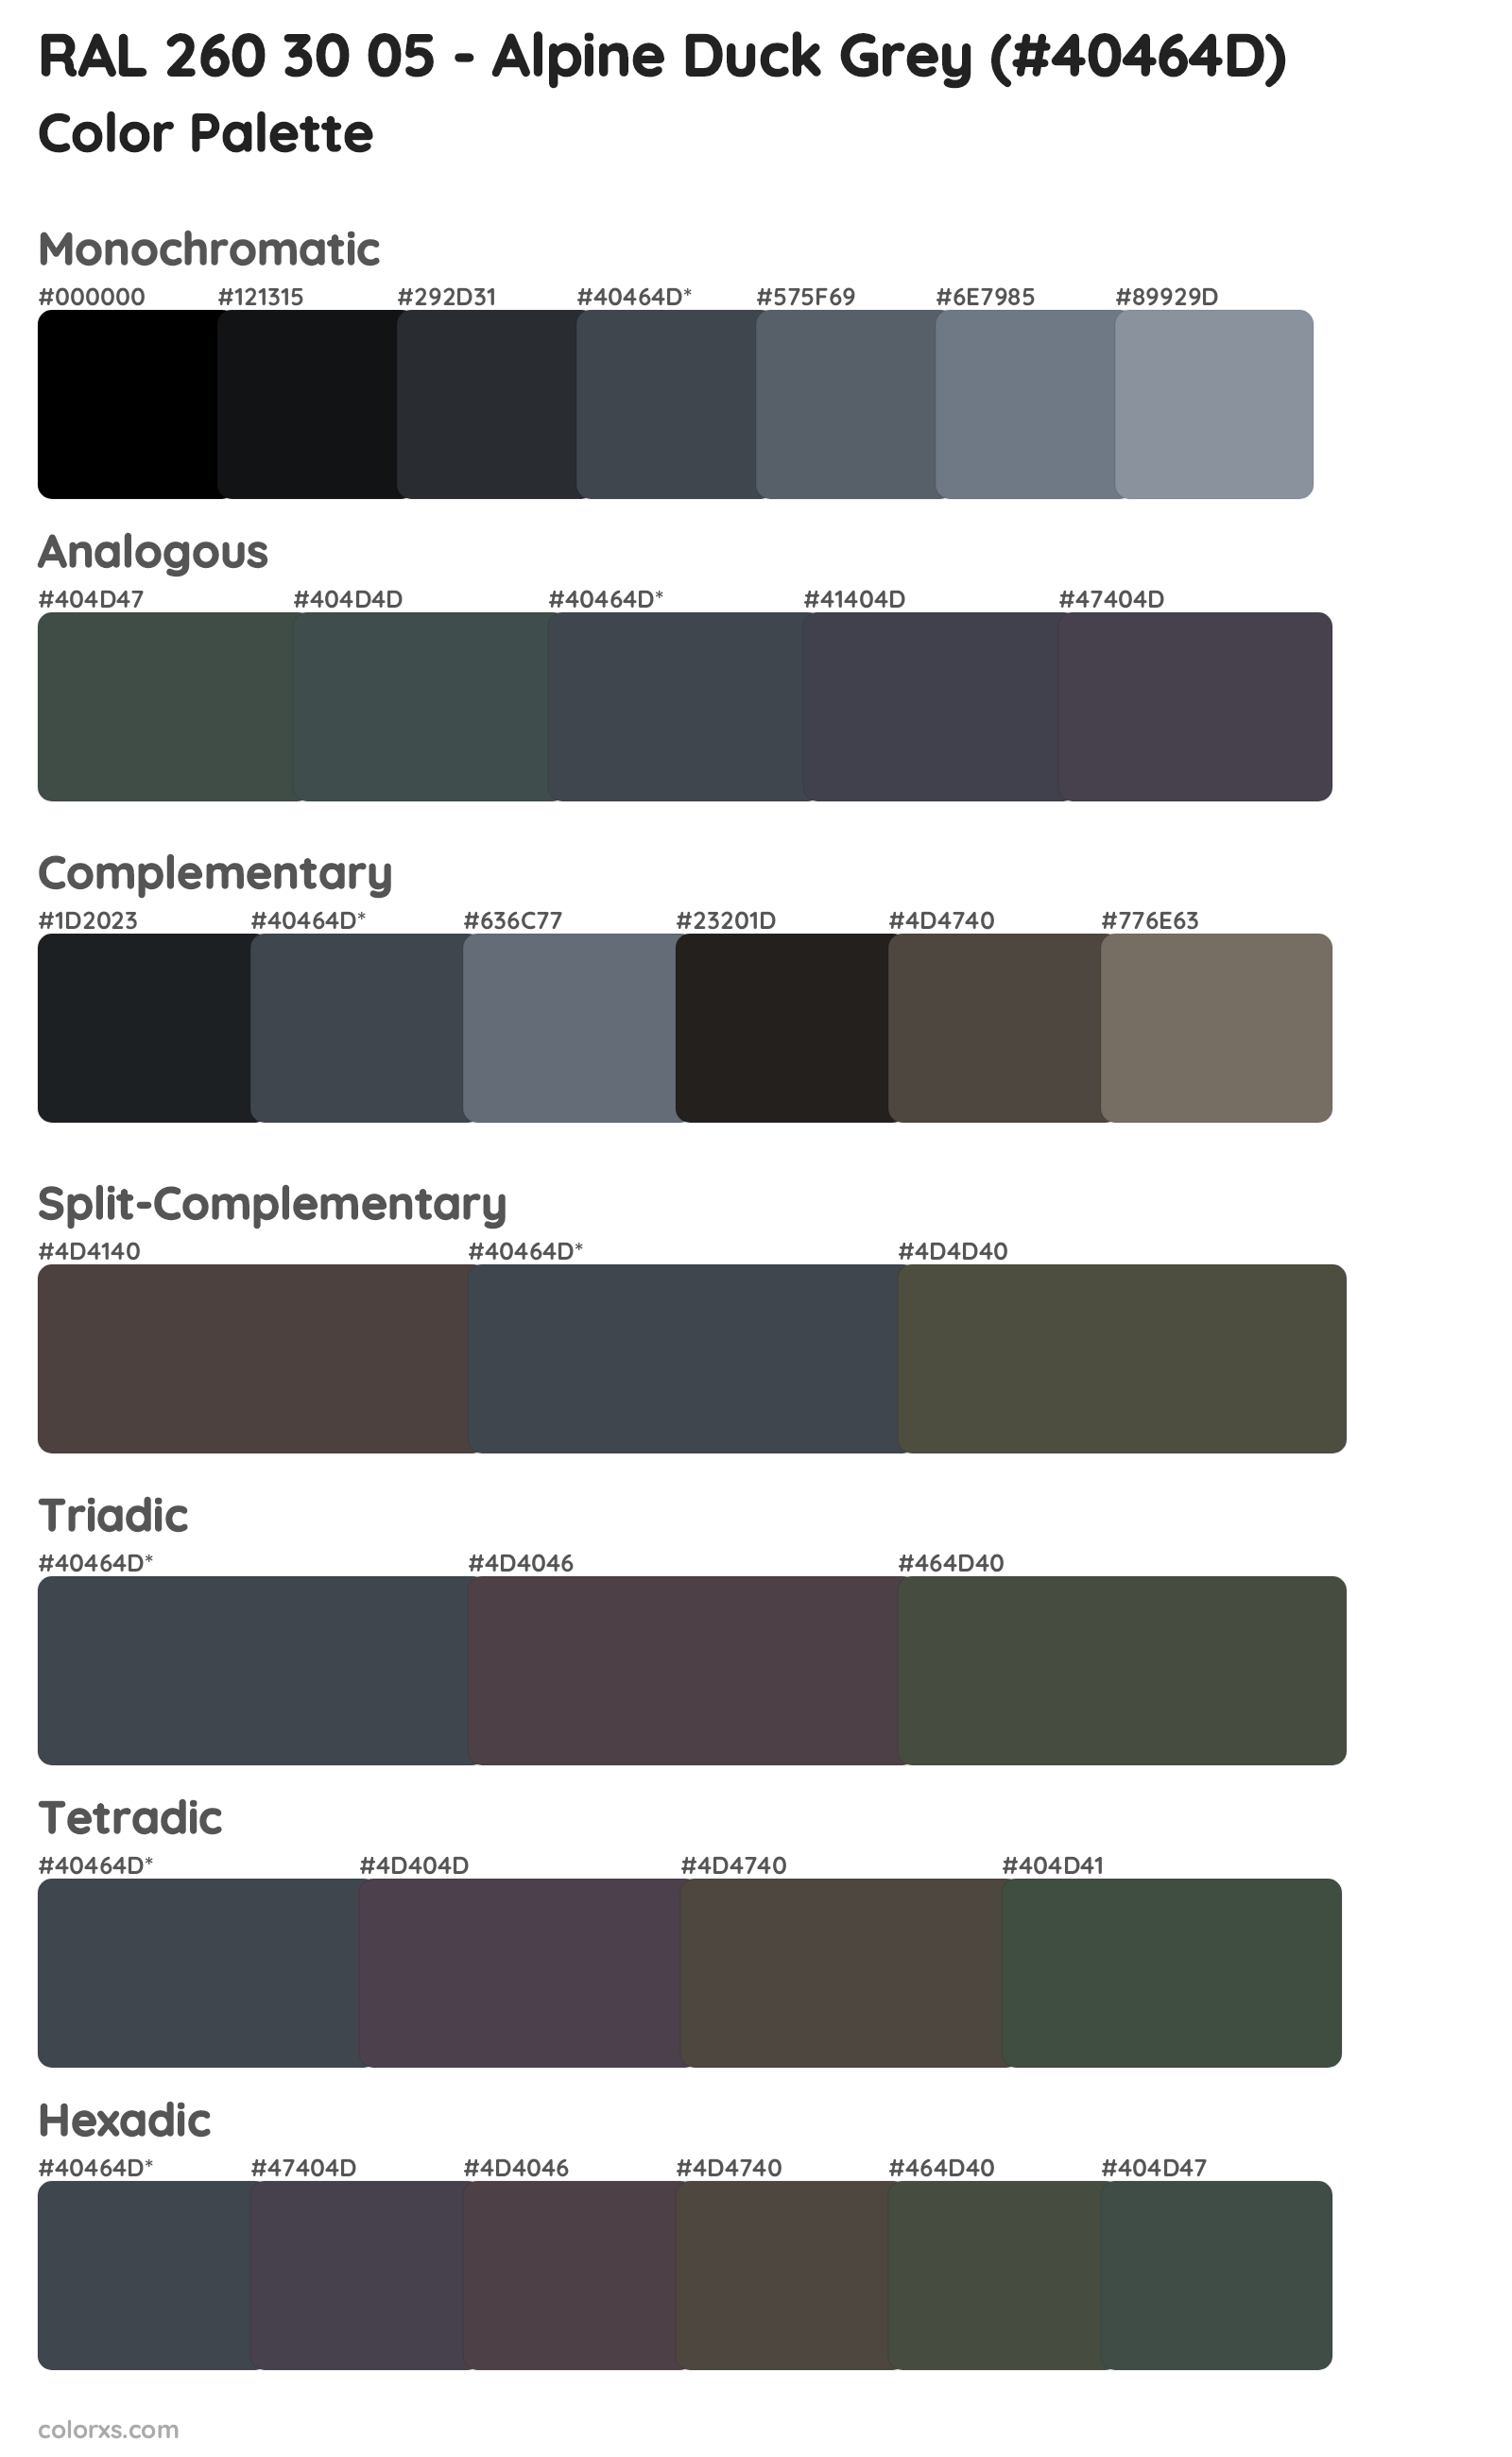 RAL 260 30 05 - Alpine Duck Grey Color Scheme Palettes